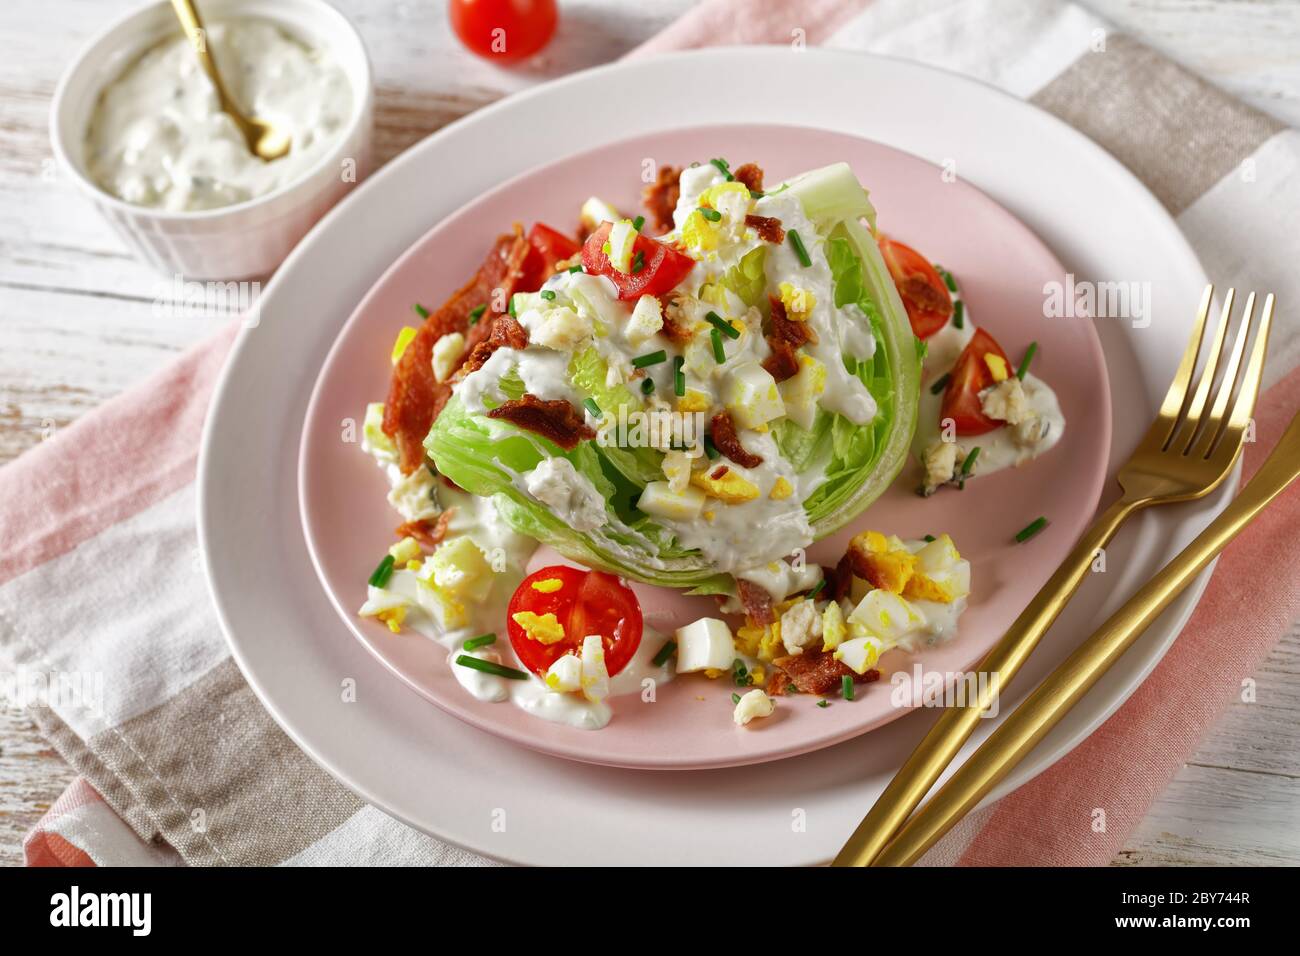 salade iceberg avec sauce au fromage bleu, bacon croustillant, tomates cerises, œufs durs émiettés, ciboulette sur des assiettes roses avec des morceaux dorés Banque D'Images